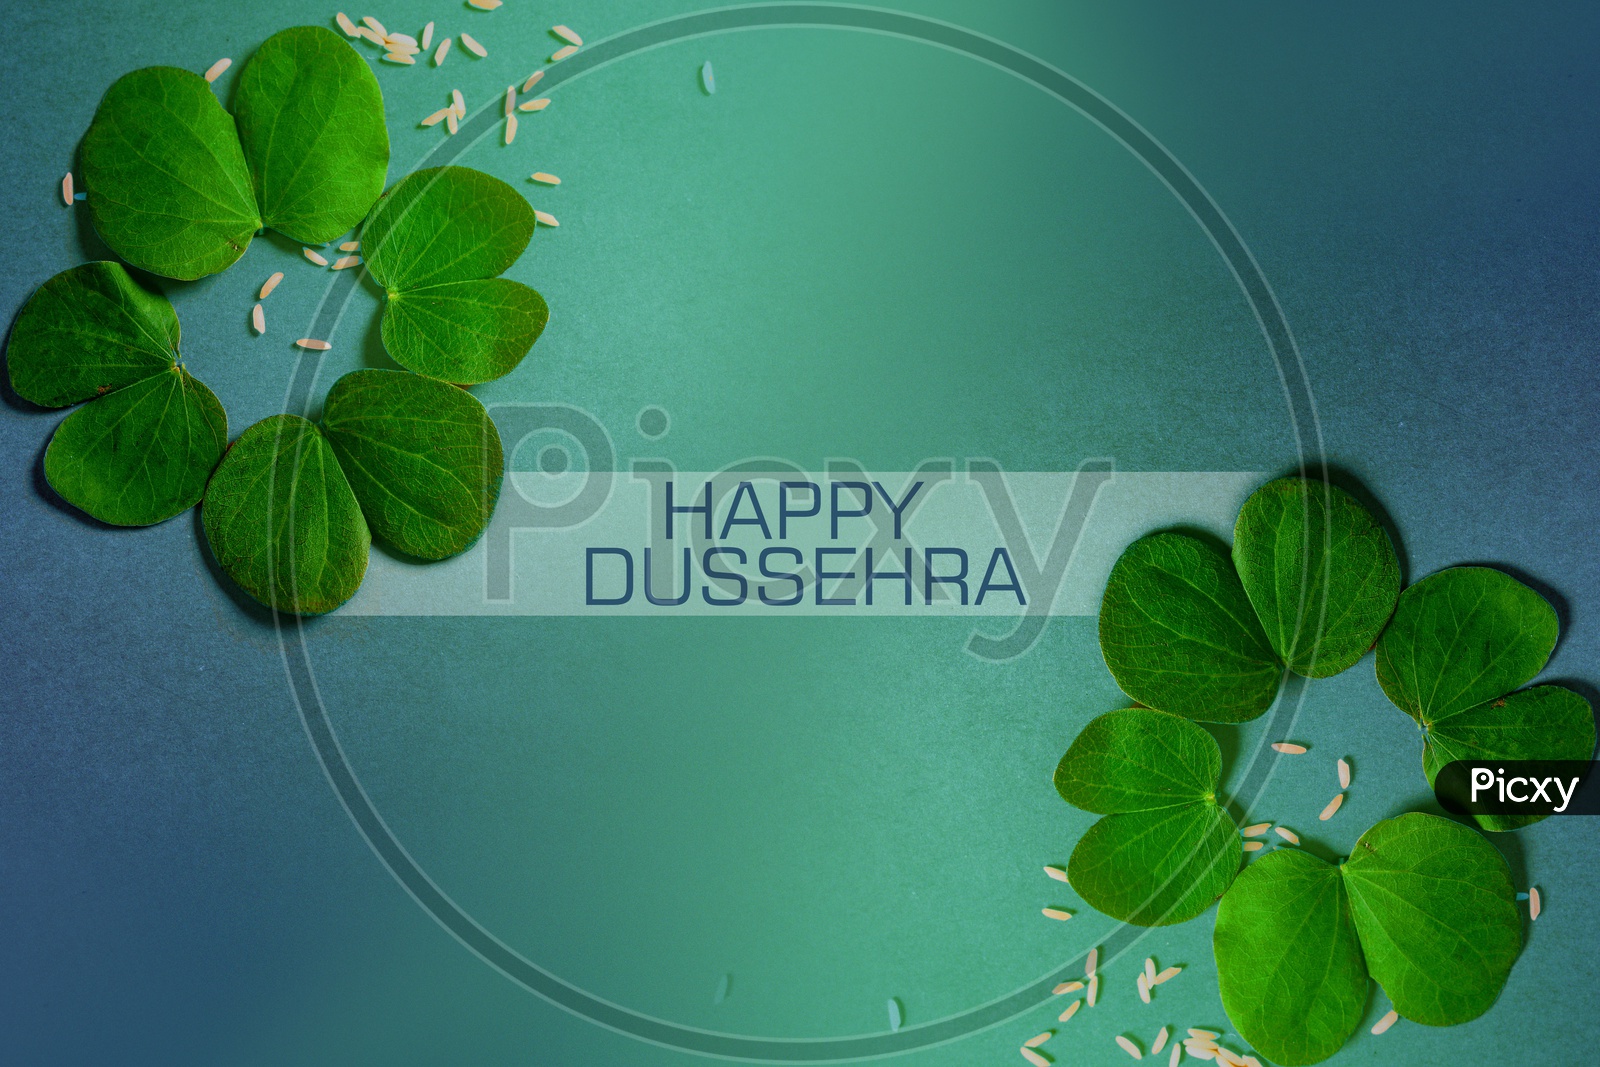 Indian Festival Dasahara, Dusshera, Dasara, Dussehra or Dashain